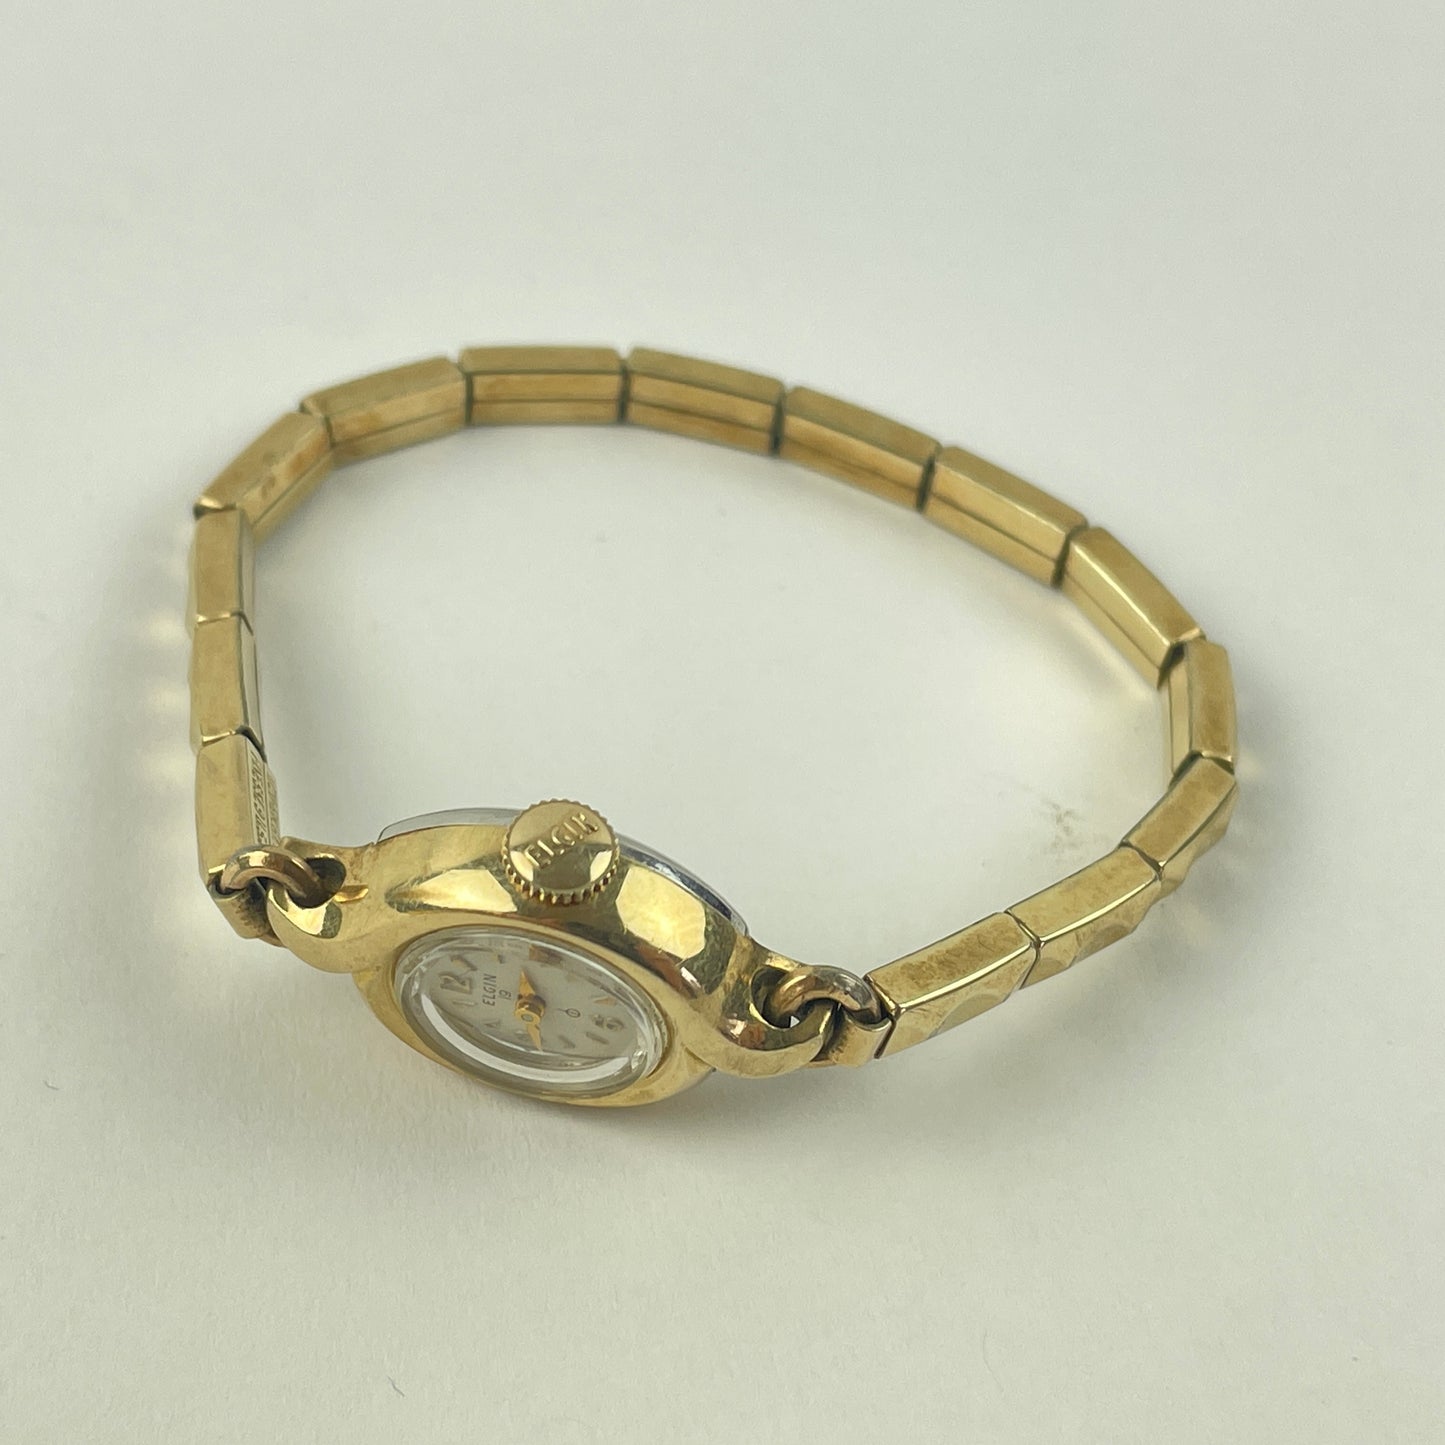 Mar Lot 113- Vintage Elgin Ladies Wristwatch